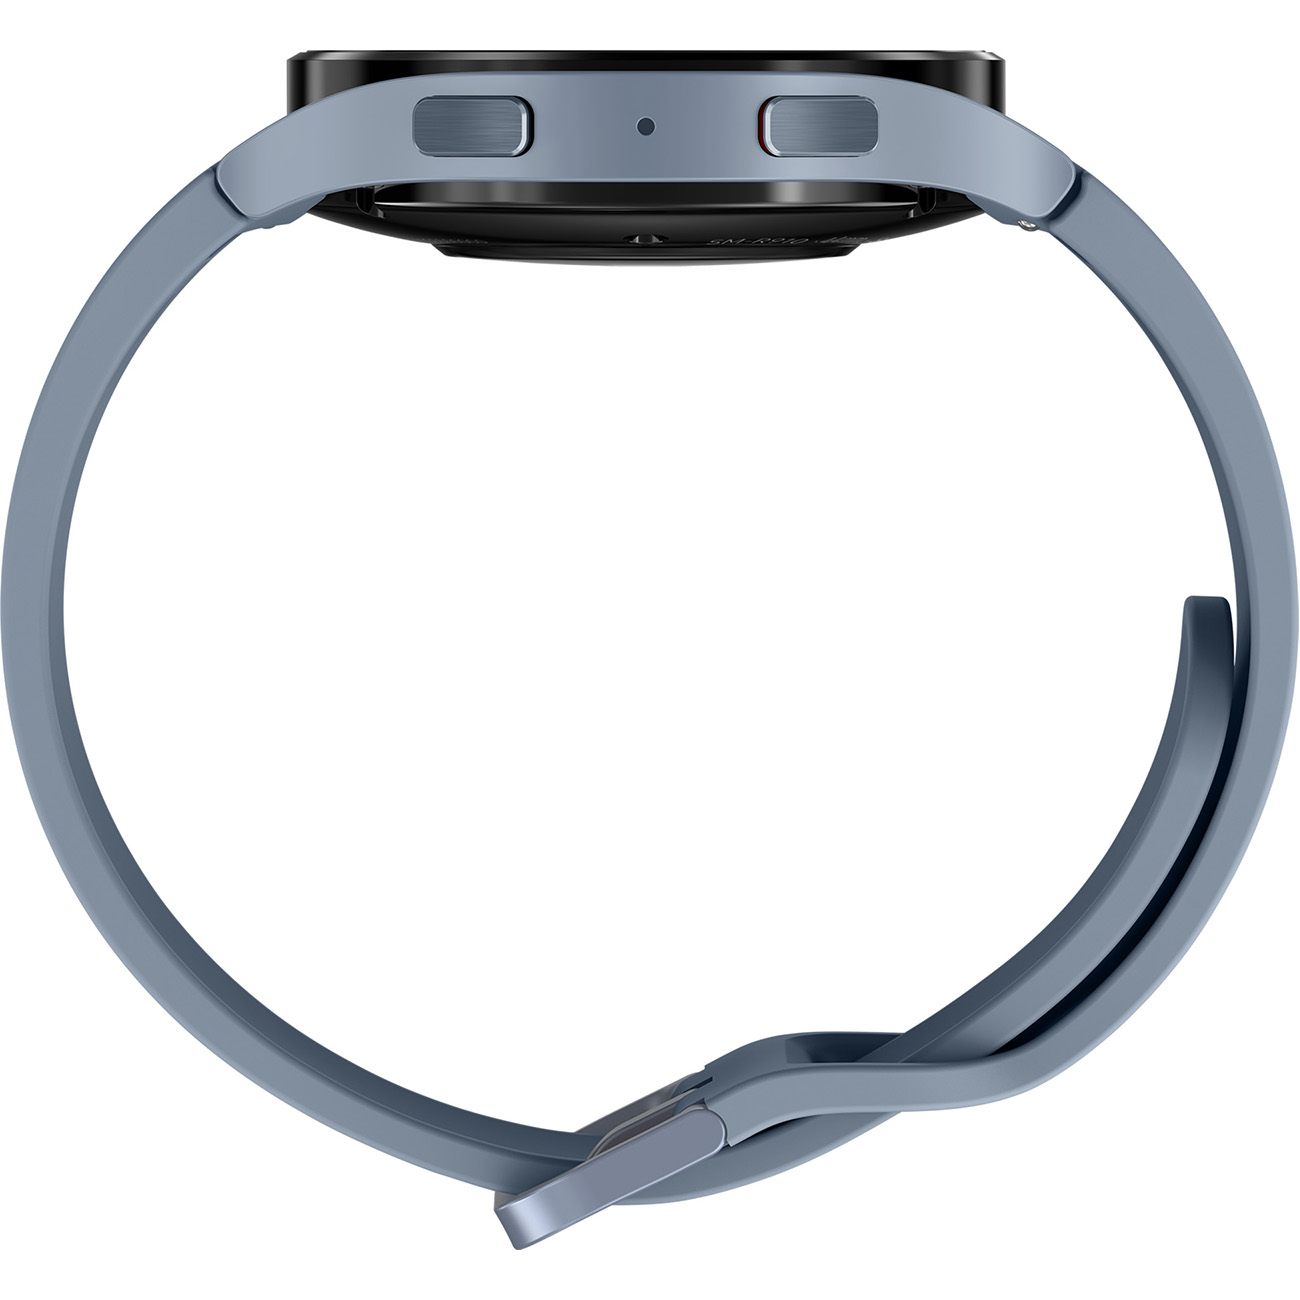 SAMSUNG Galaxy Silikon, M/L, Watch Aluminium blau Smartwatch 5